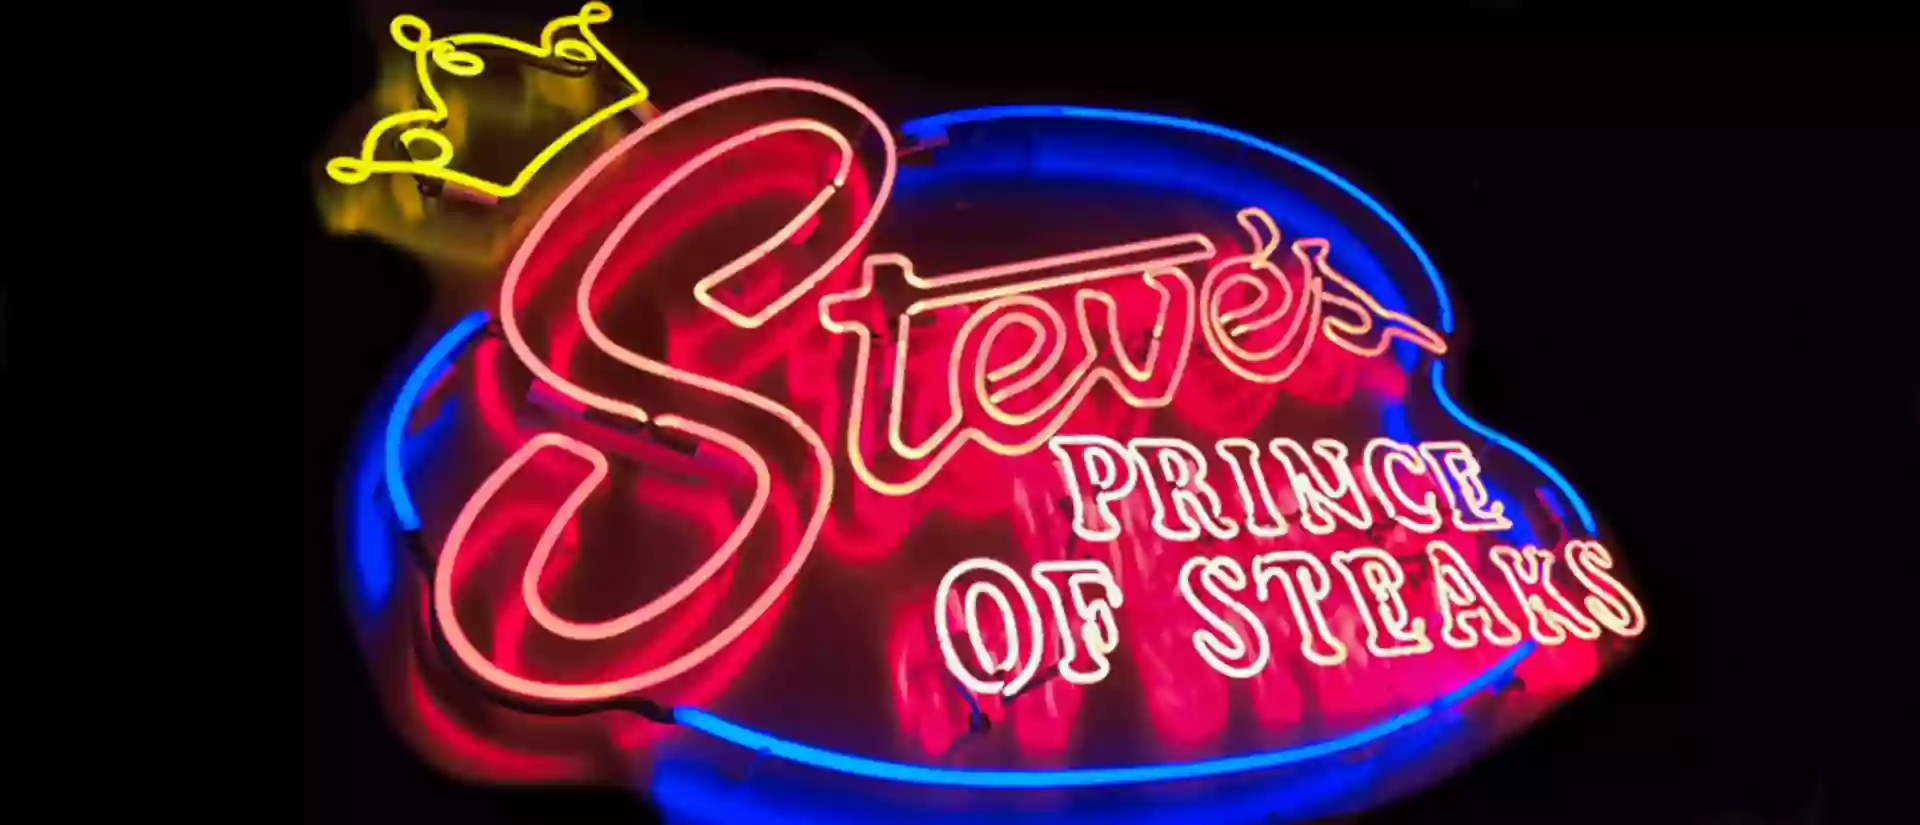 Steve's Prince of Steaks